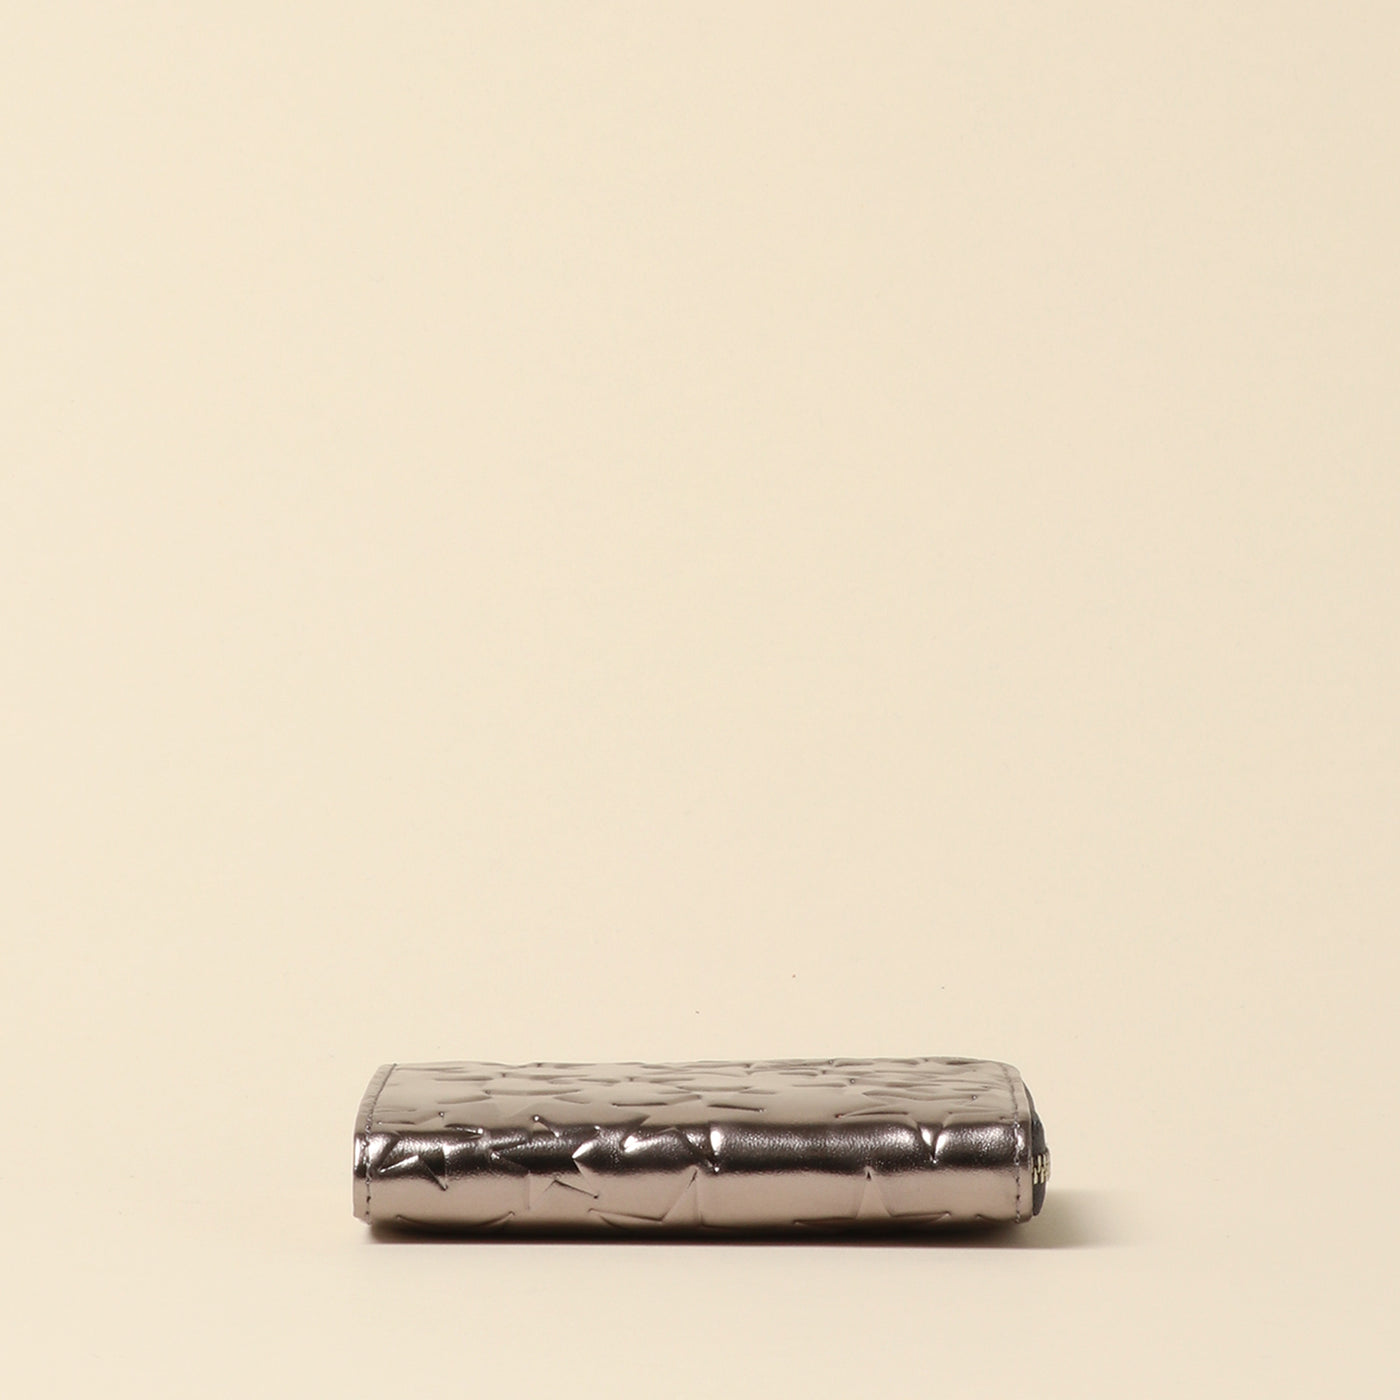 <Coquette> Etoile L Zip Mini Wallet/Dark Silver